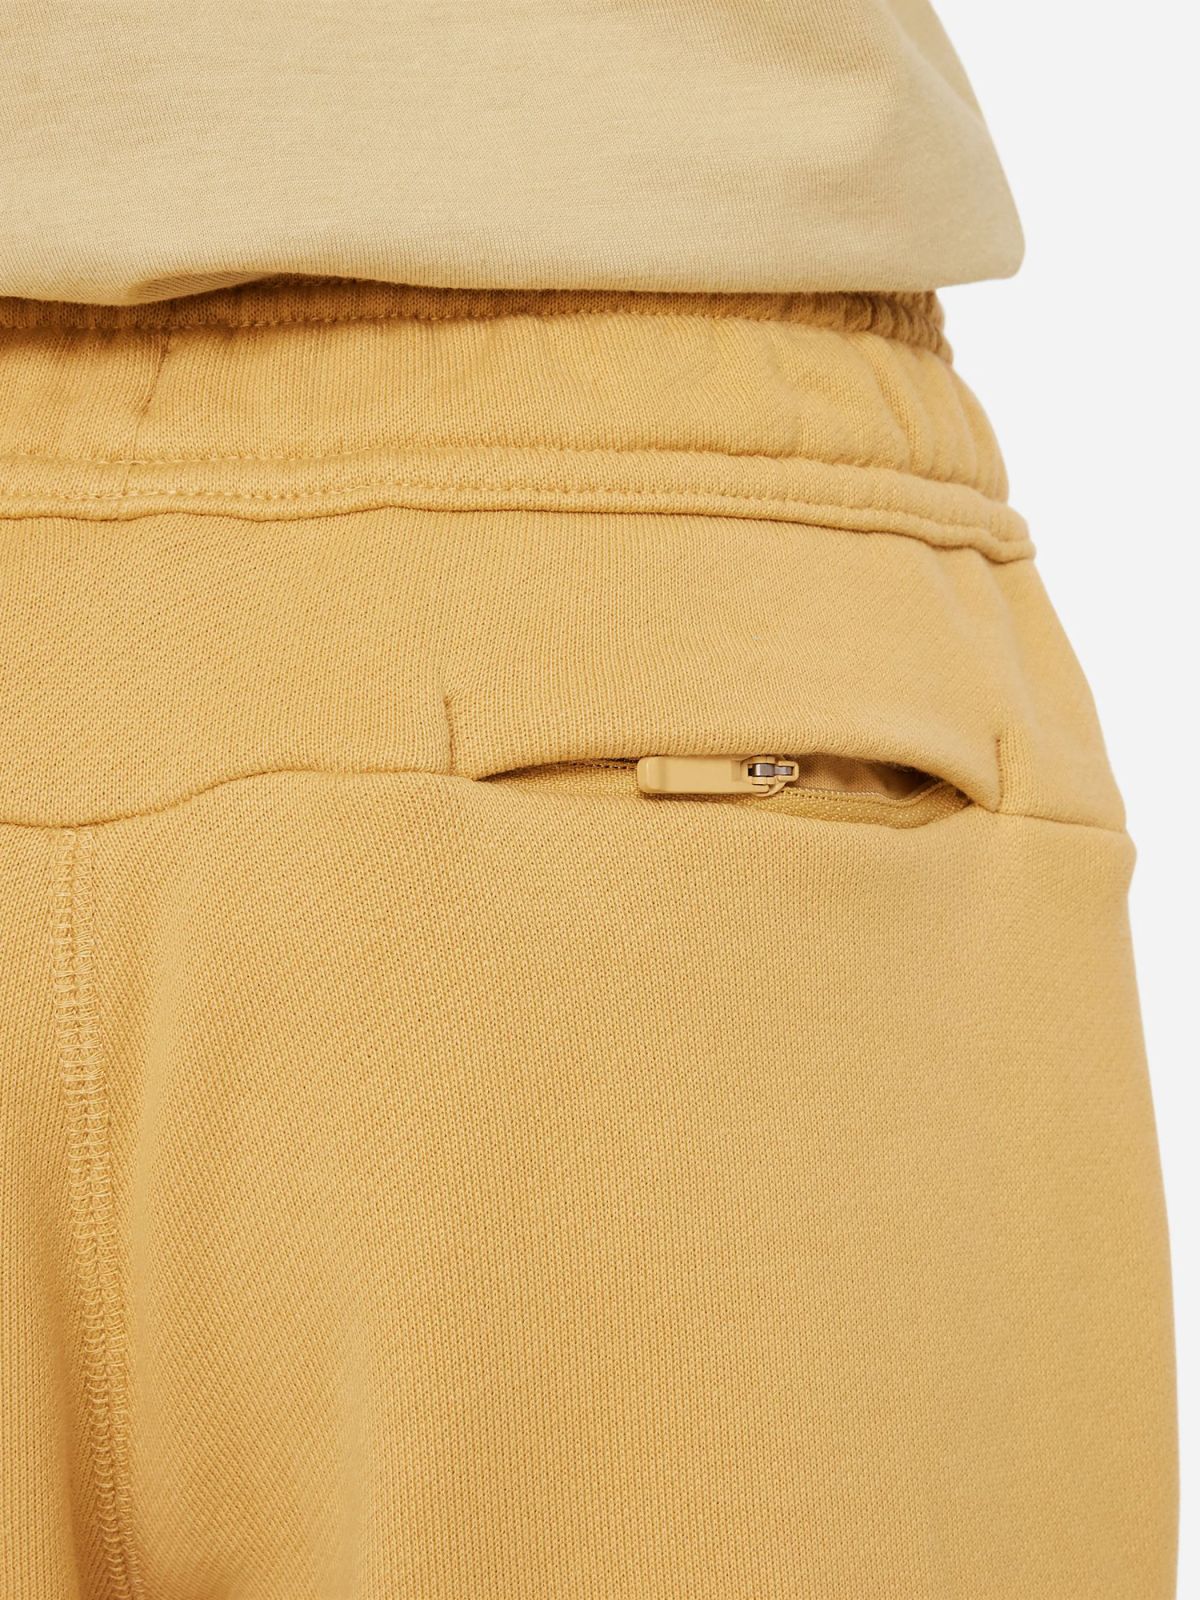  מכנסי טרנינג עם הדפס לוגו / יוניסקס של NIKE